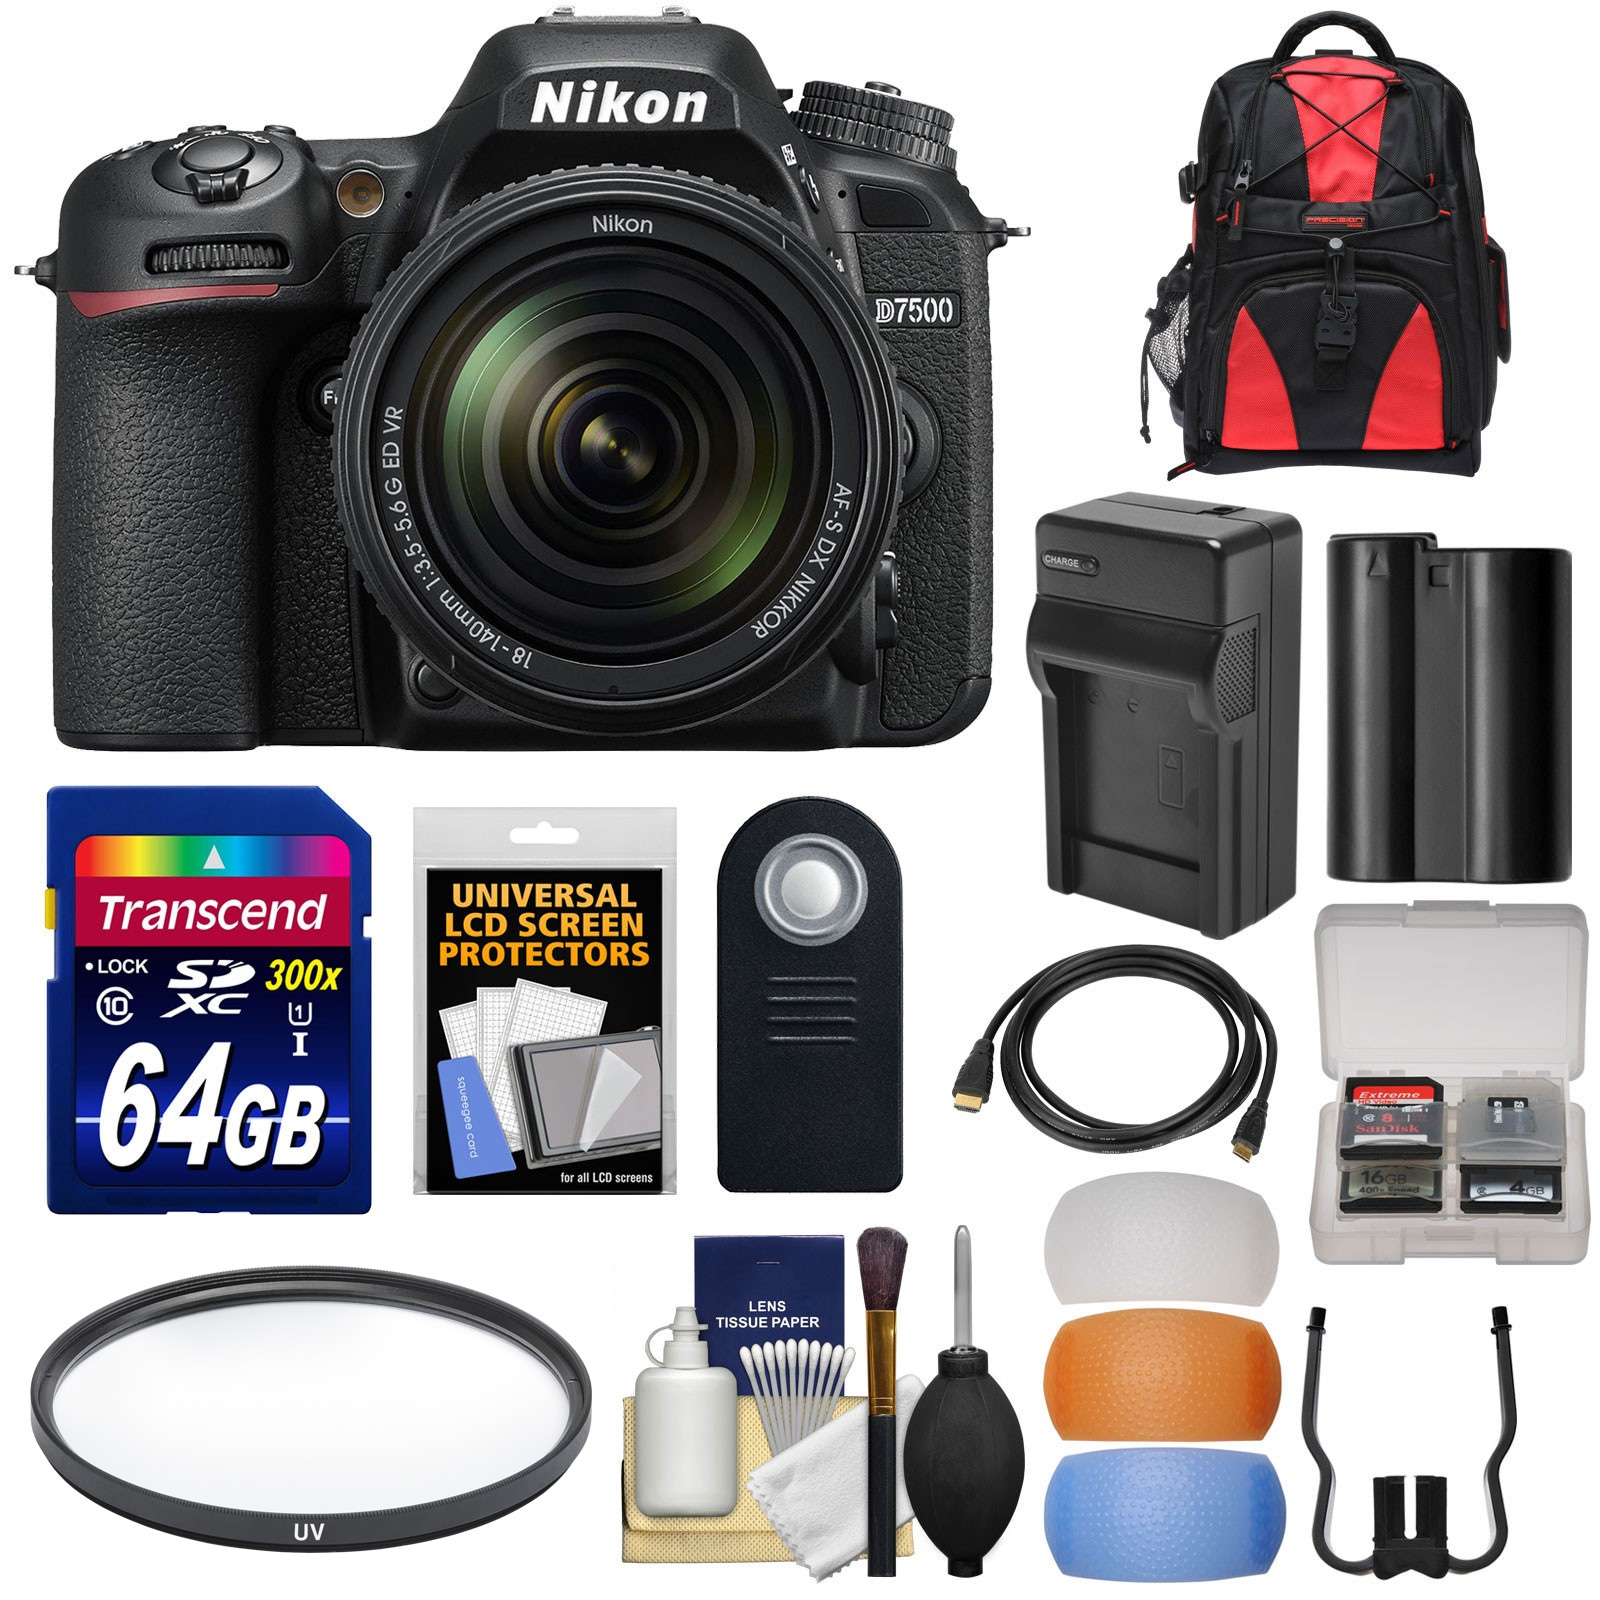 Nikon D7500 Wi-Fi 4K Digital SLR Camera & 18-140mm VR DX Lens with 64GB Card + Battery & Charger + Backpack + Filter + Kit - image 1 of 6